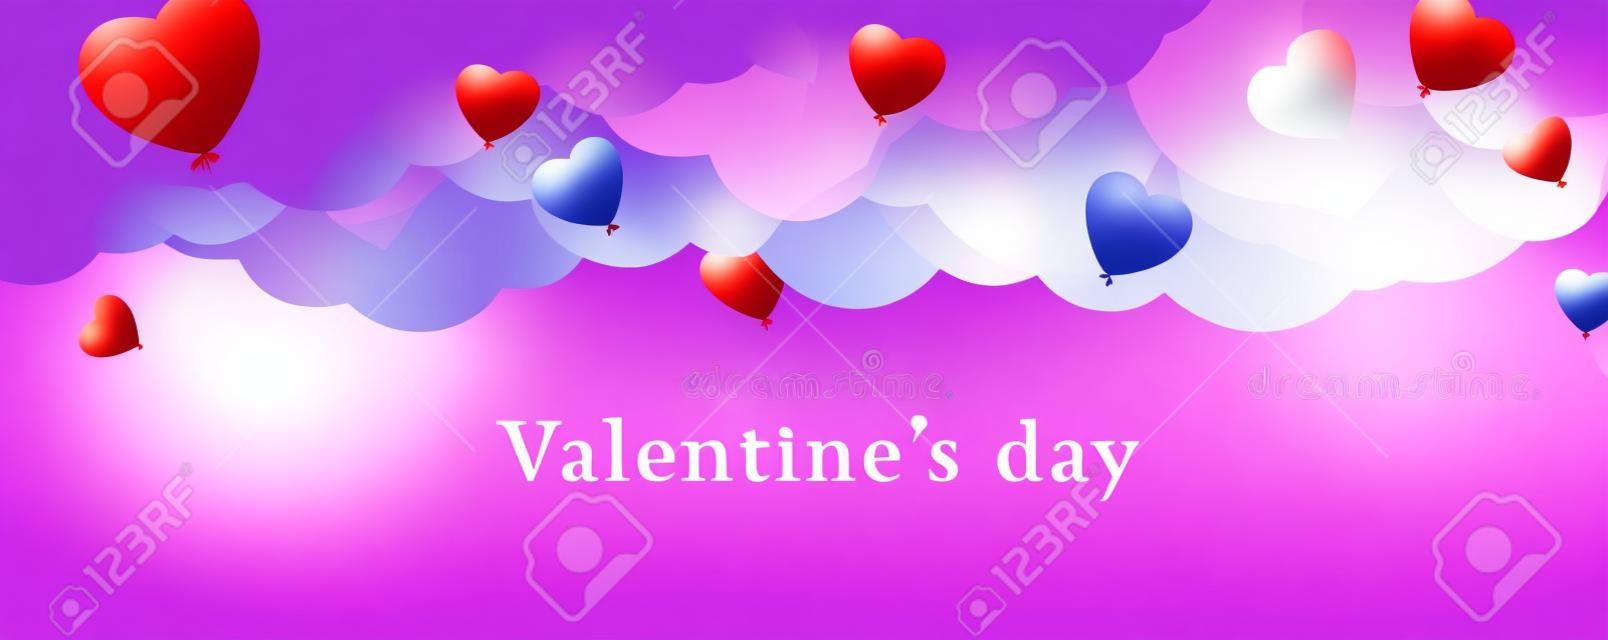 Valentijnsdag achtergrond met Heart Shaped Ballonnen. Vector illustratie.banners.Wallpaper.flyers, uitnodiging, posters, brochure, voucher korting.